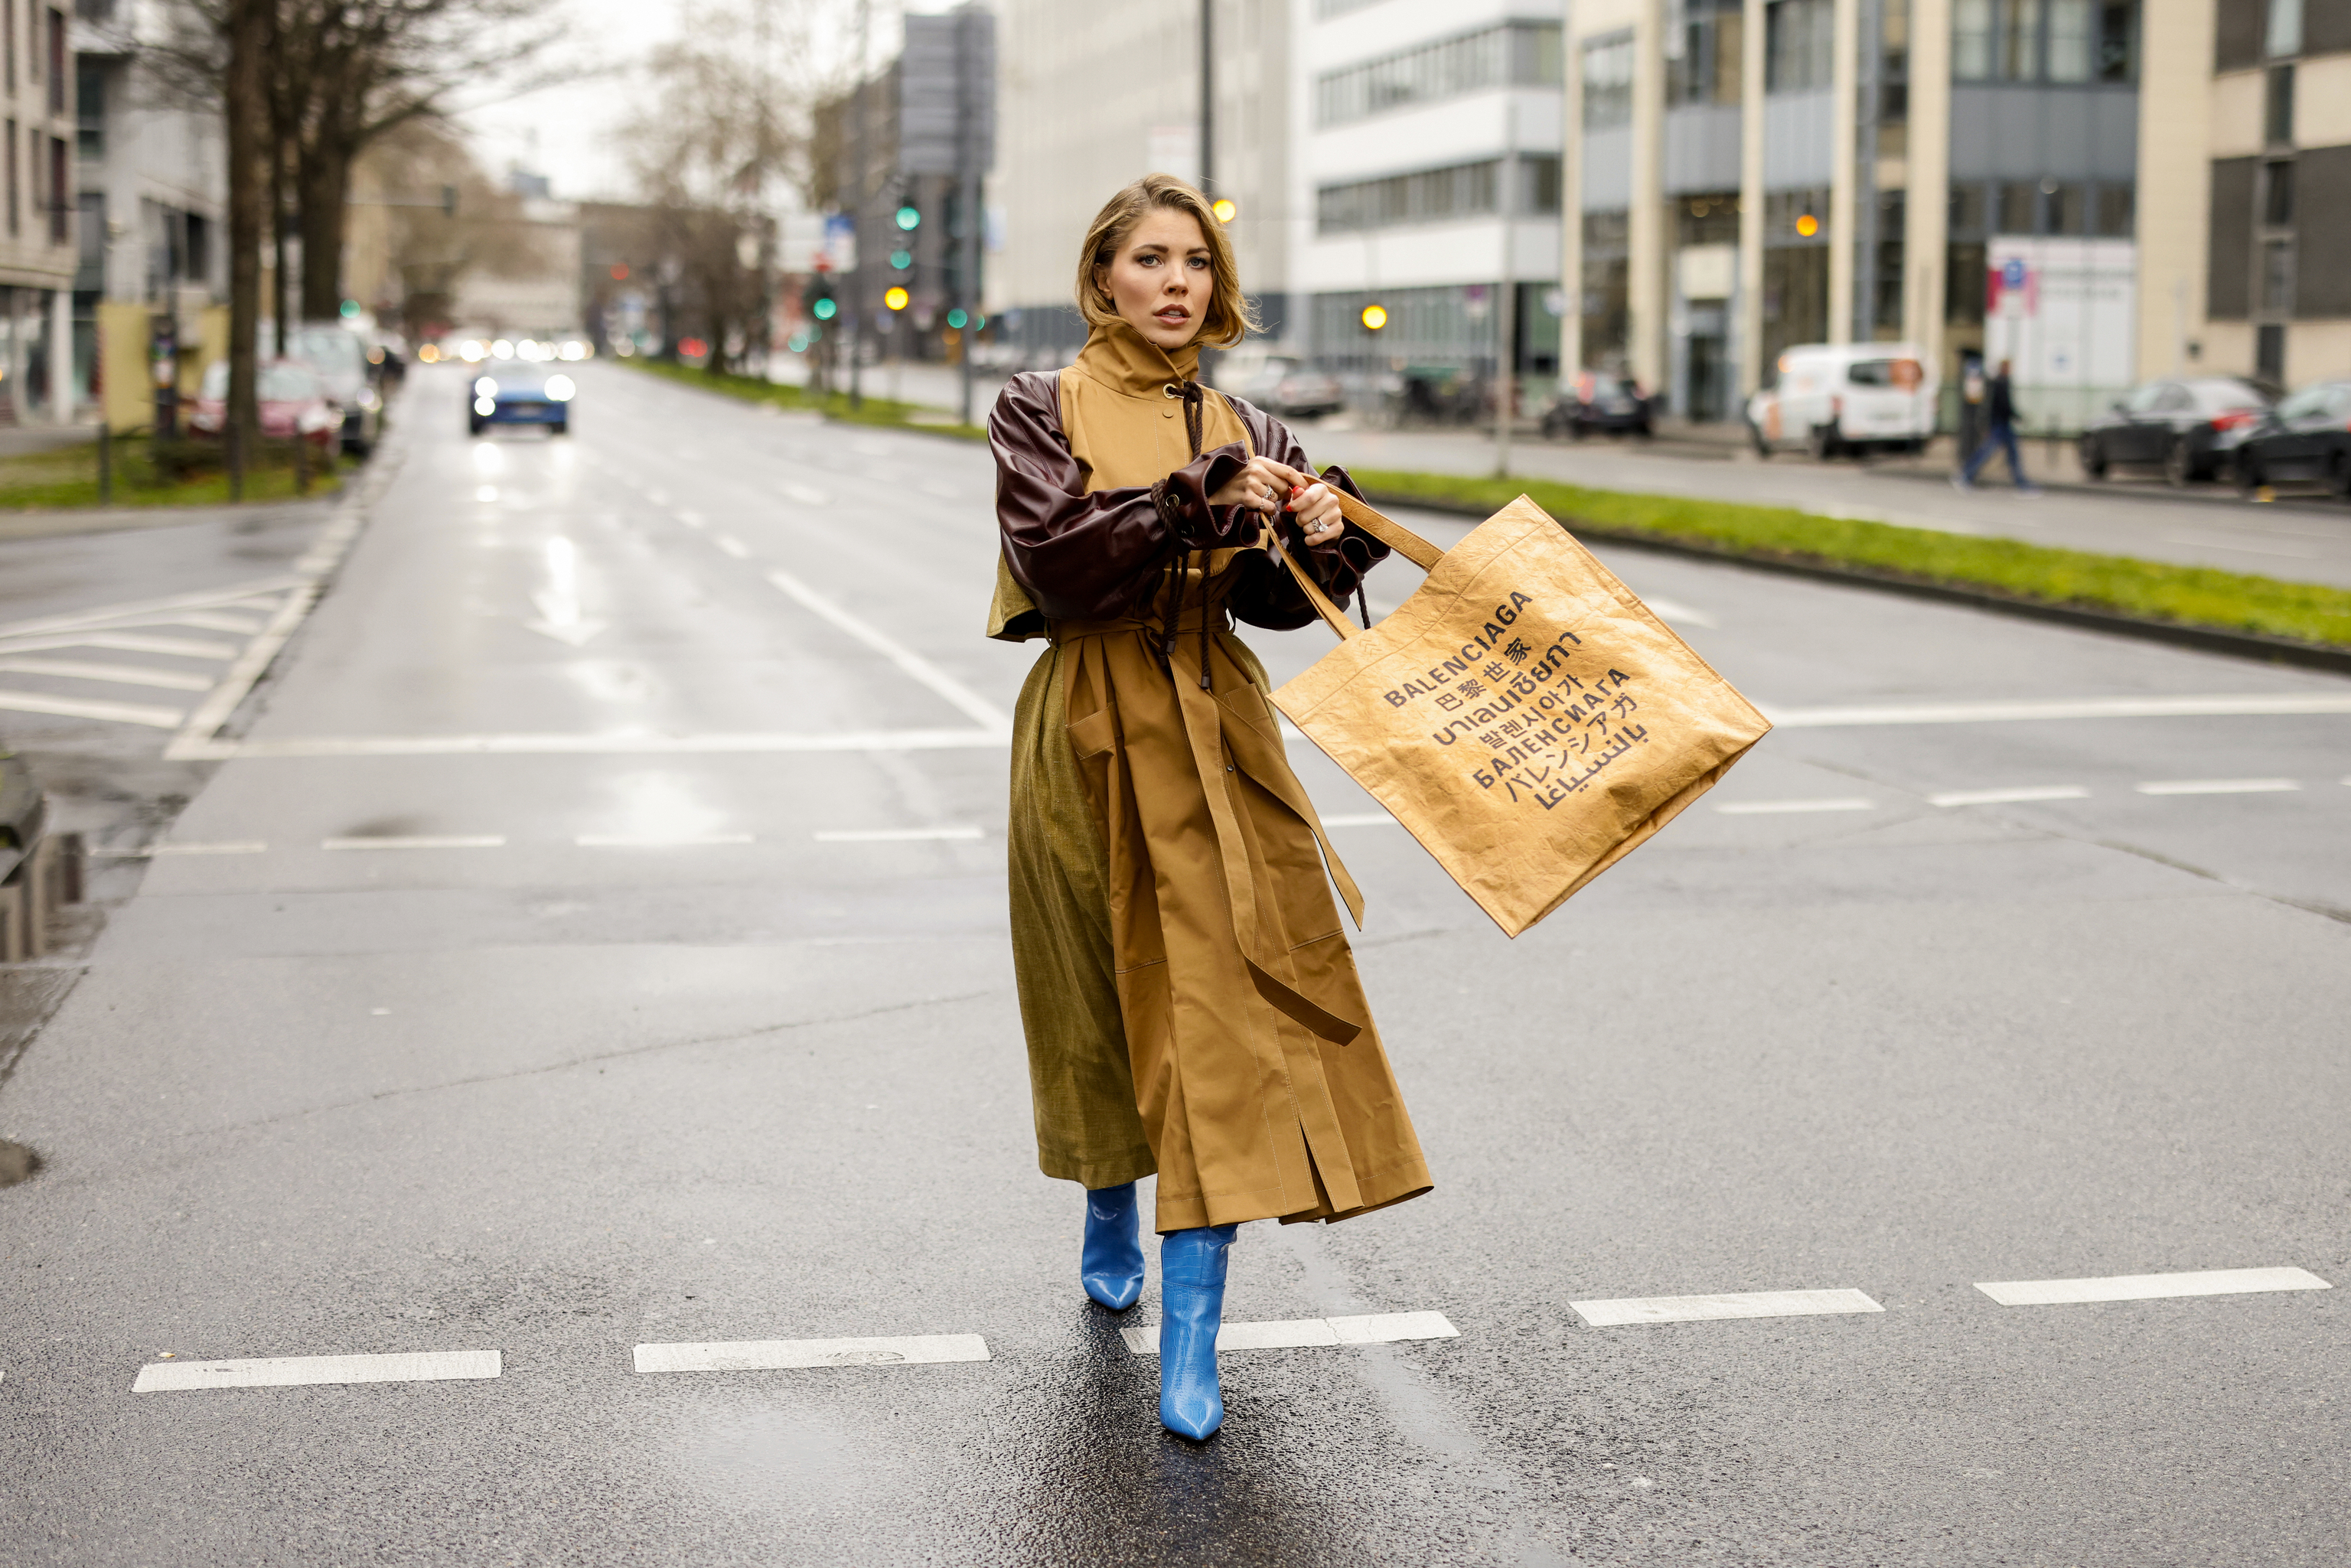 Shopper Bag - Bolso grande de trabajo para mujer, de piel sintética, a la  moda, color gris, bolso casual